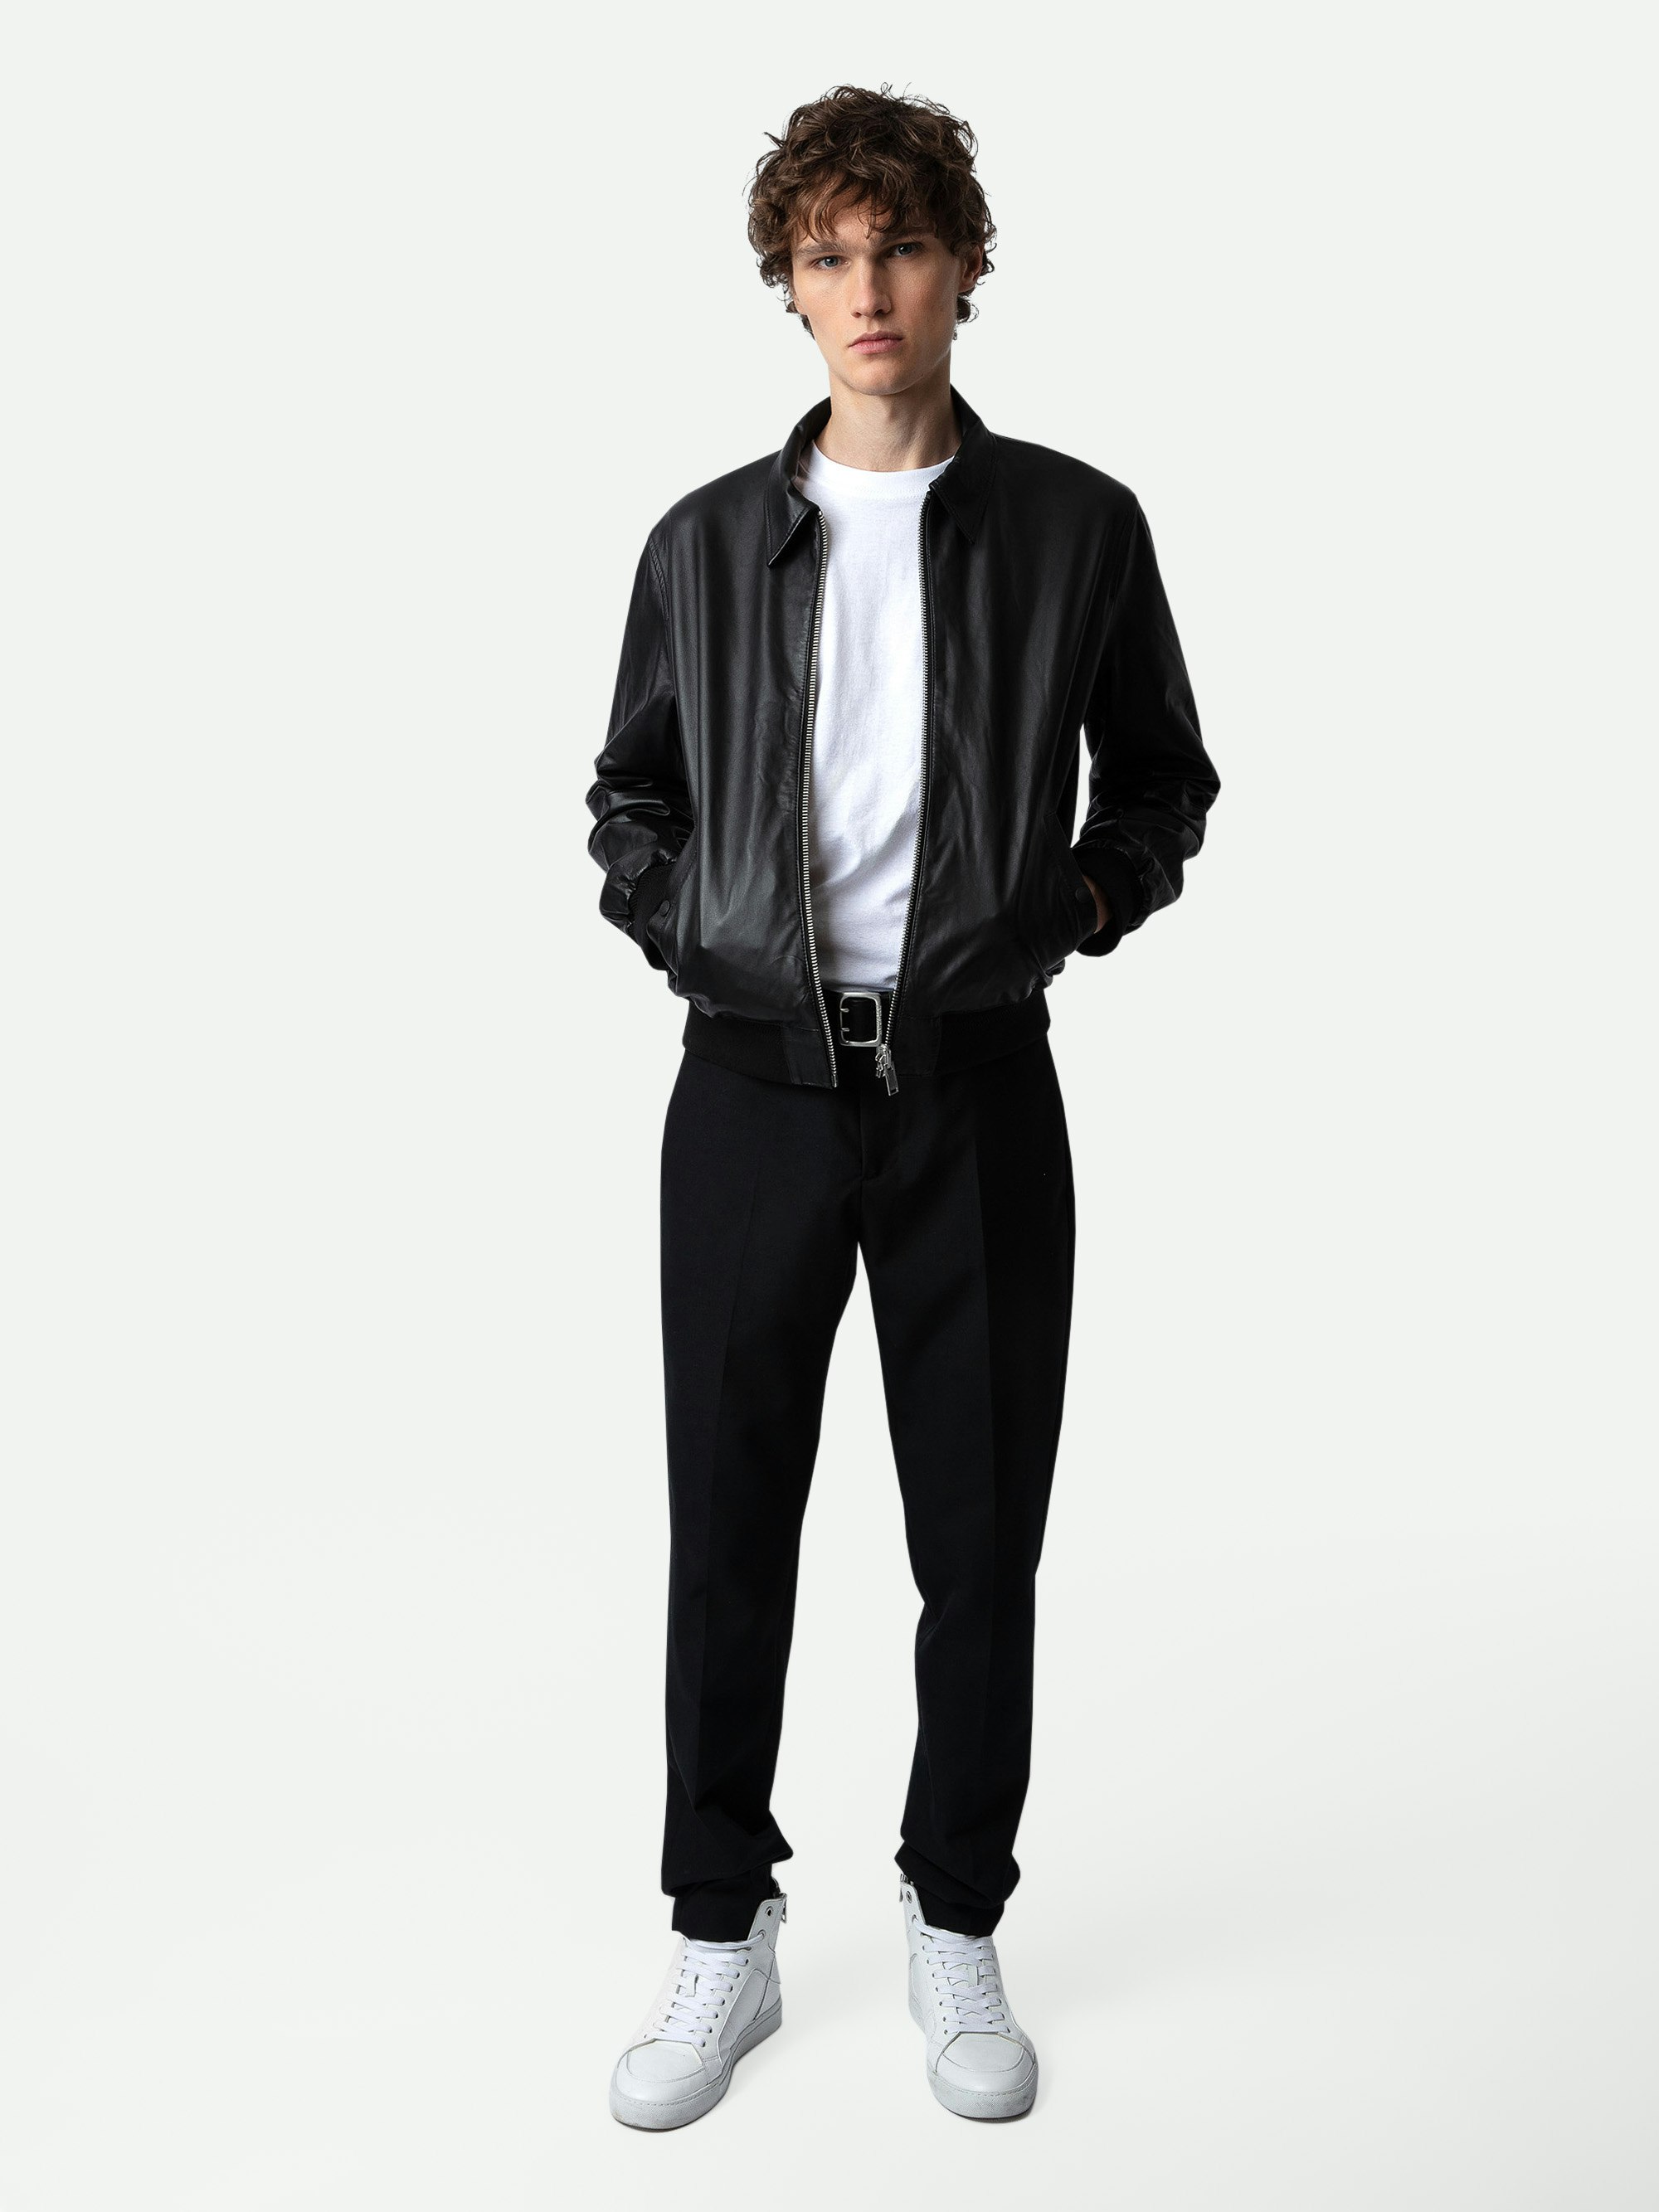 Jacke Mate Leder - Schwarze Wendejacke aus Leder und Nylon mit Taschen und Badge auf dem Rücken.